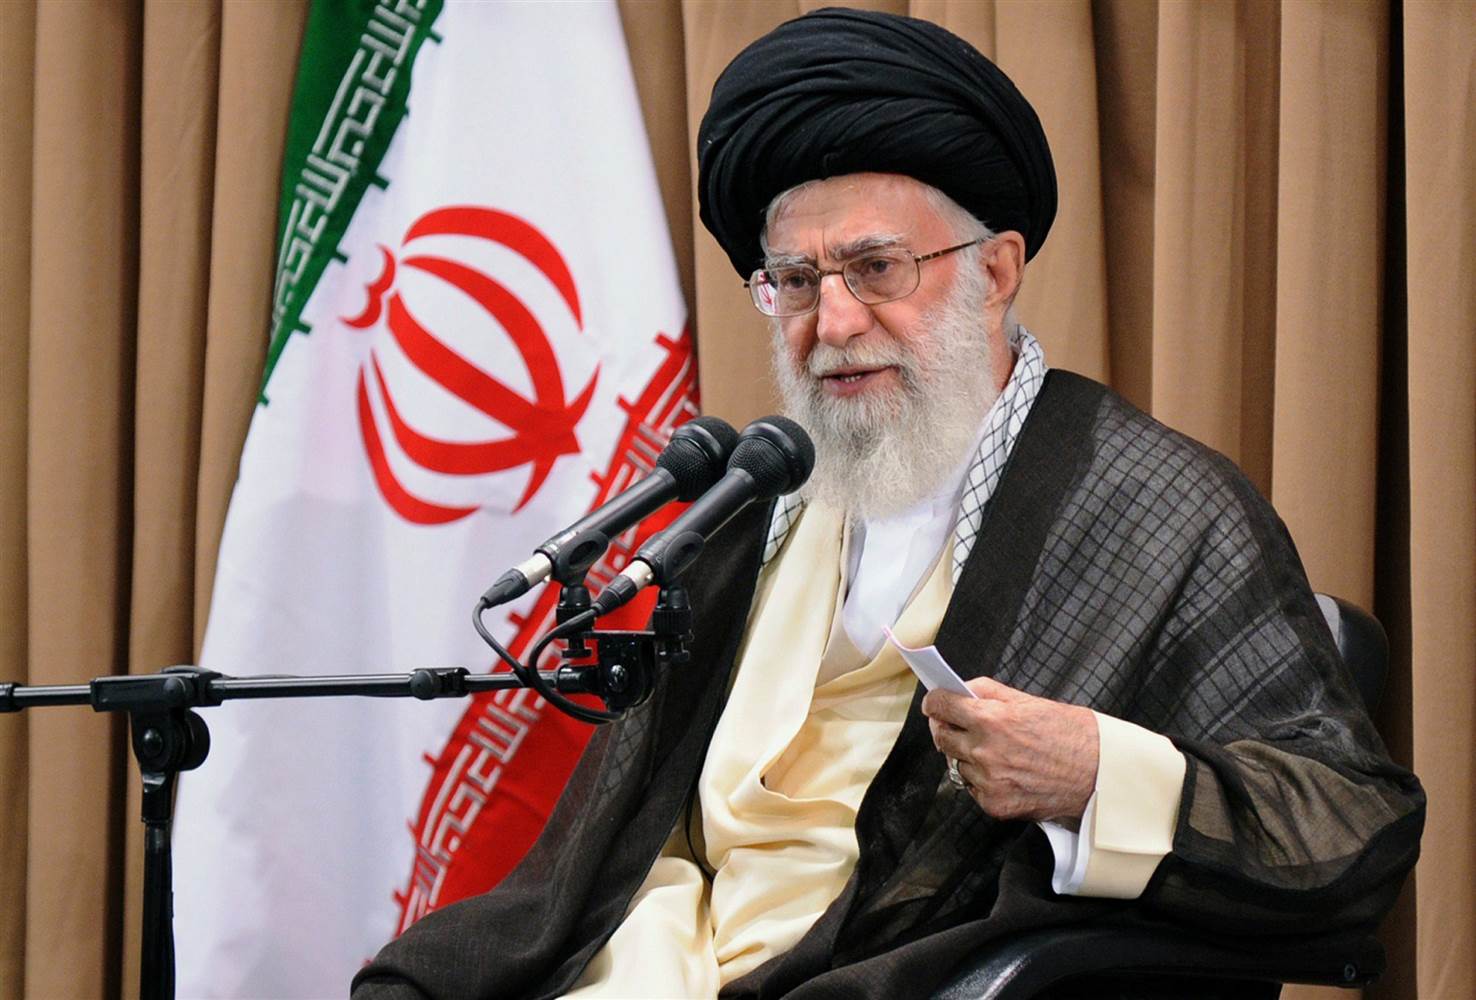 Ιράν: «Εχθρικό μέτρο» οι νέες κυρώσεις που ενέκρινε η Βουλή των Αντιπροσώπων των ΗΠΑ